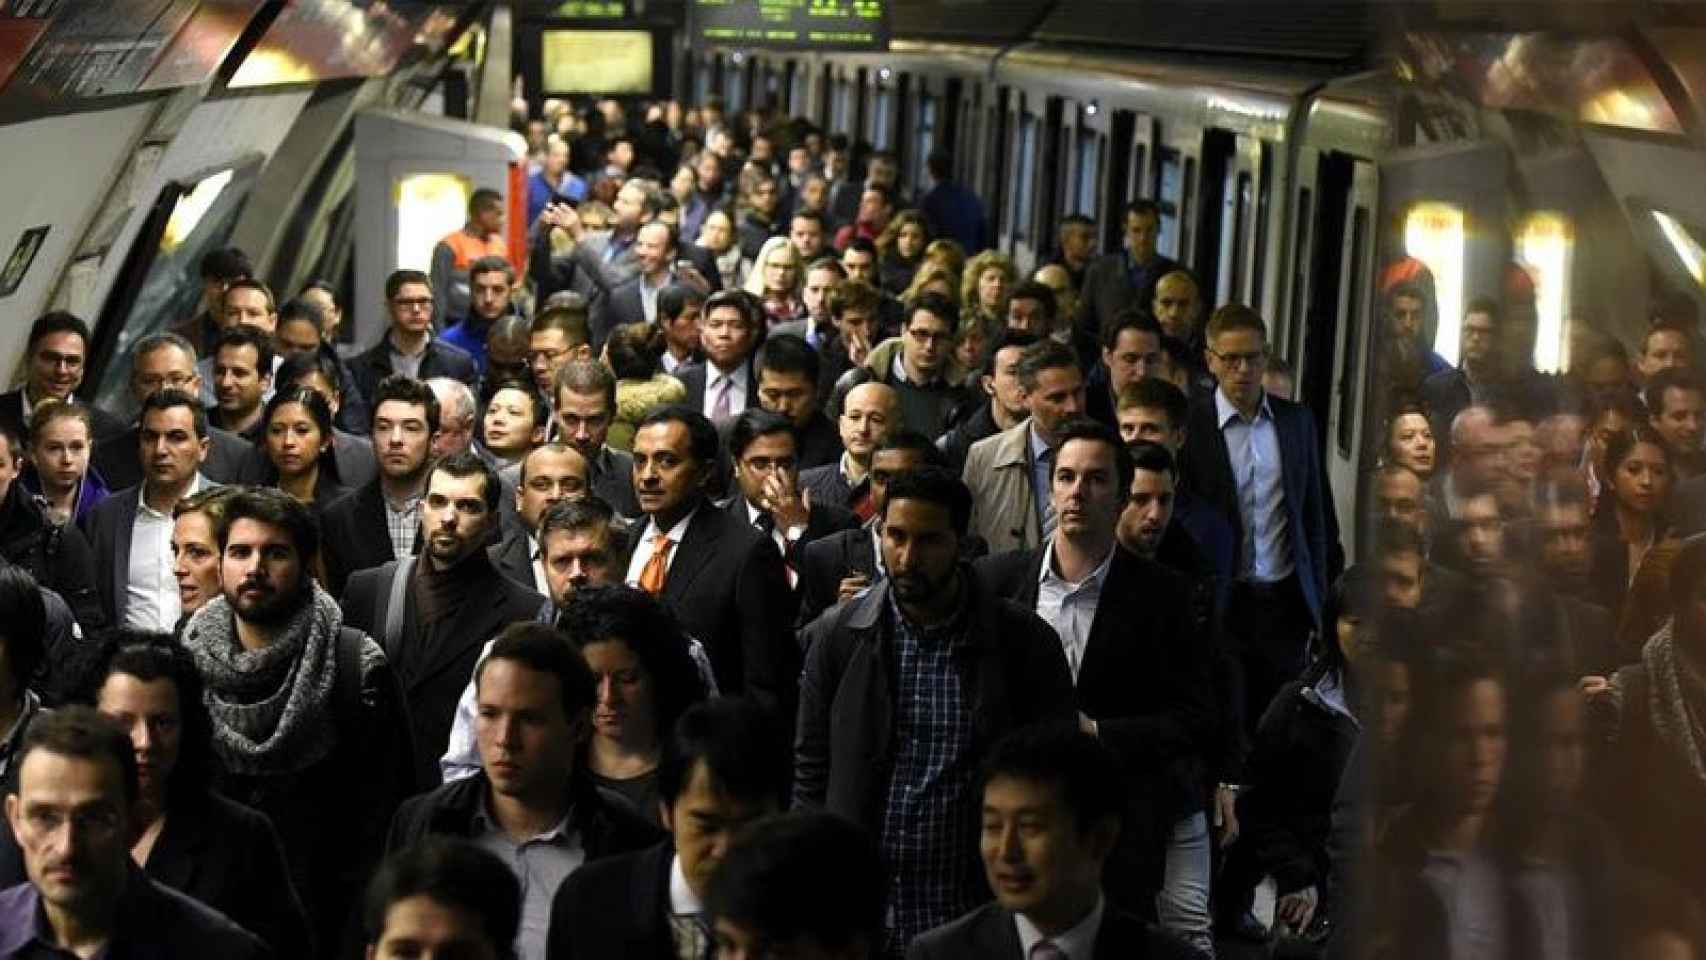 El Metro de Barcelona durante la jornada de huelga que se convocó en febrero, cuando se celebraba el Mobile World Congress en la ciudad.